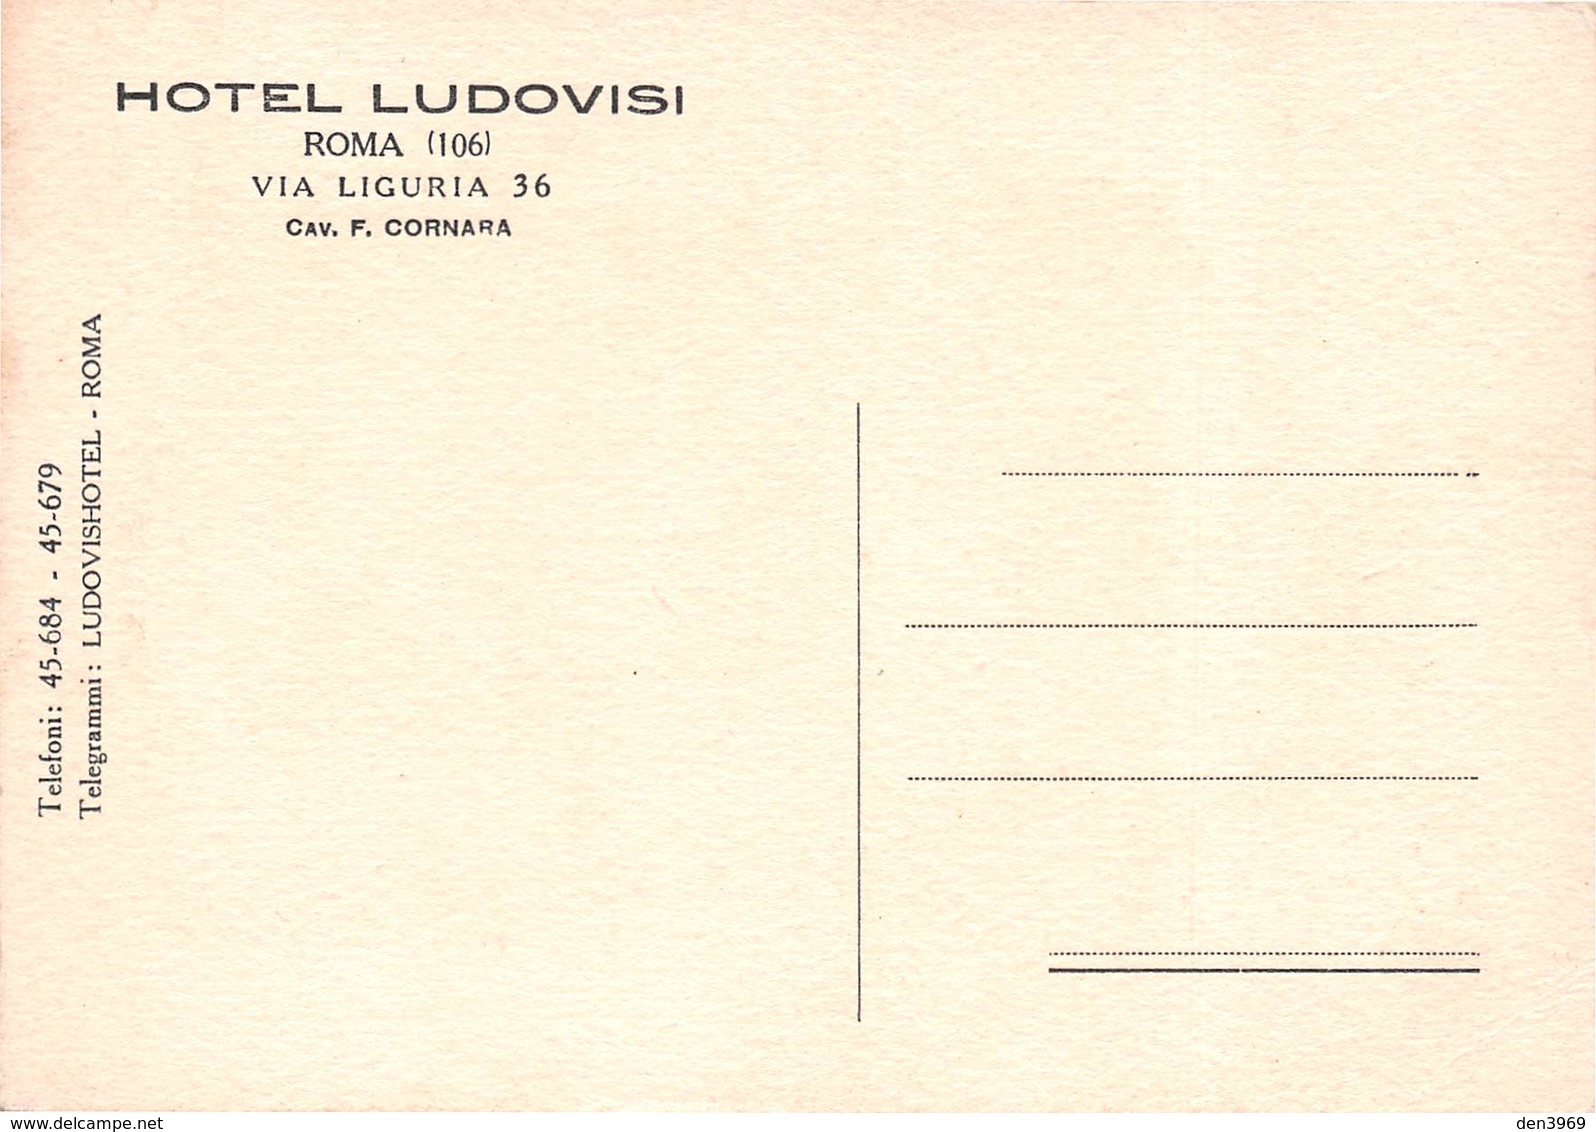 Italie - ROMA - Hotel Ludovisi, Via Liguria 36 - Cav. F. Cornara - Dessin - Cafés, Hôtels & Restaurants